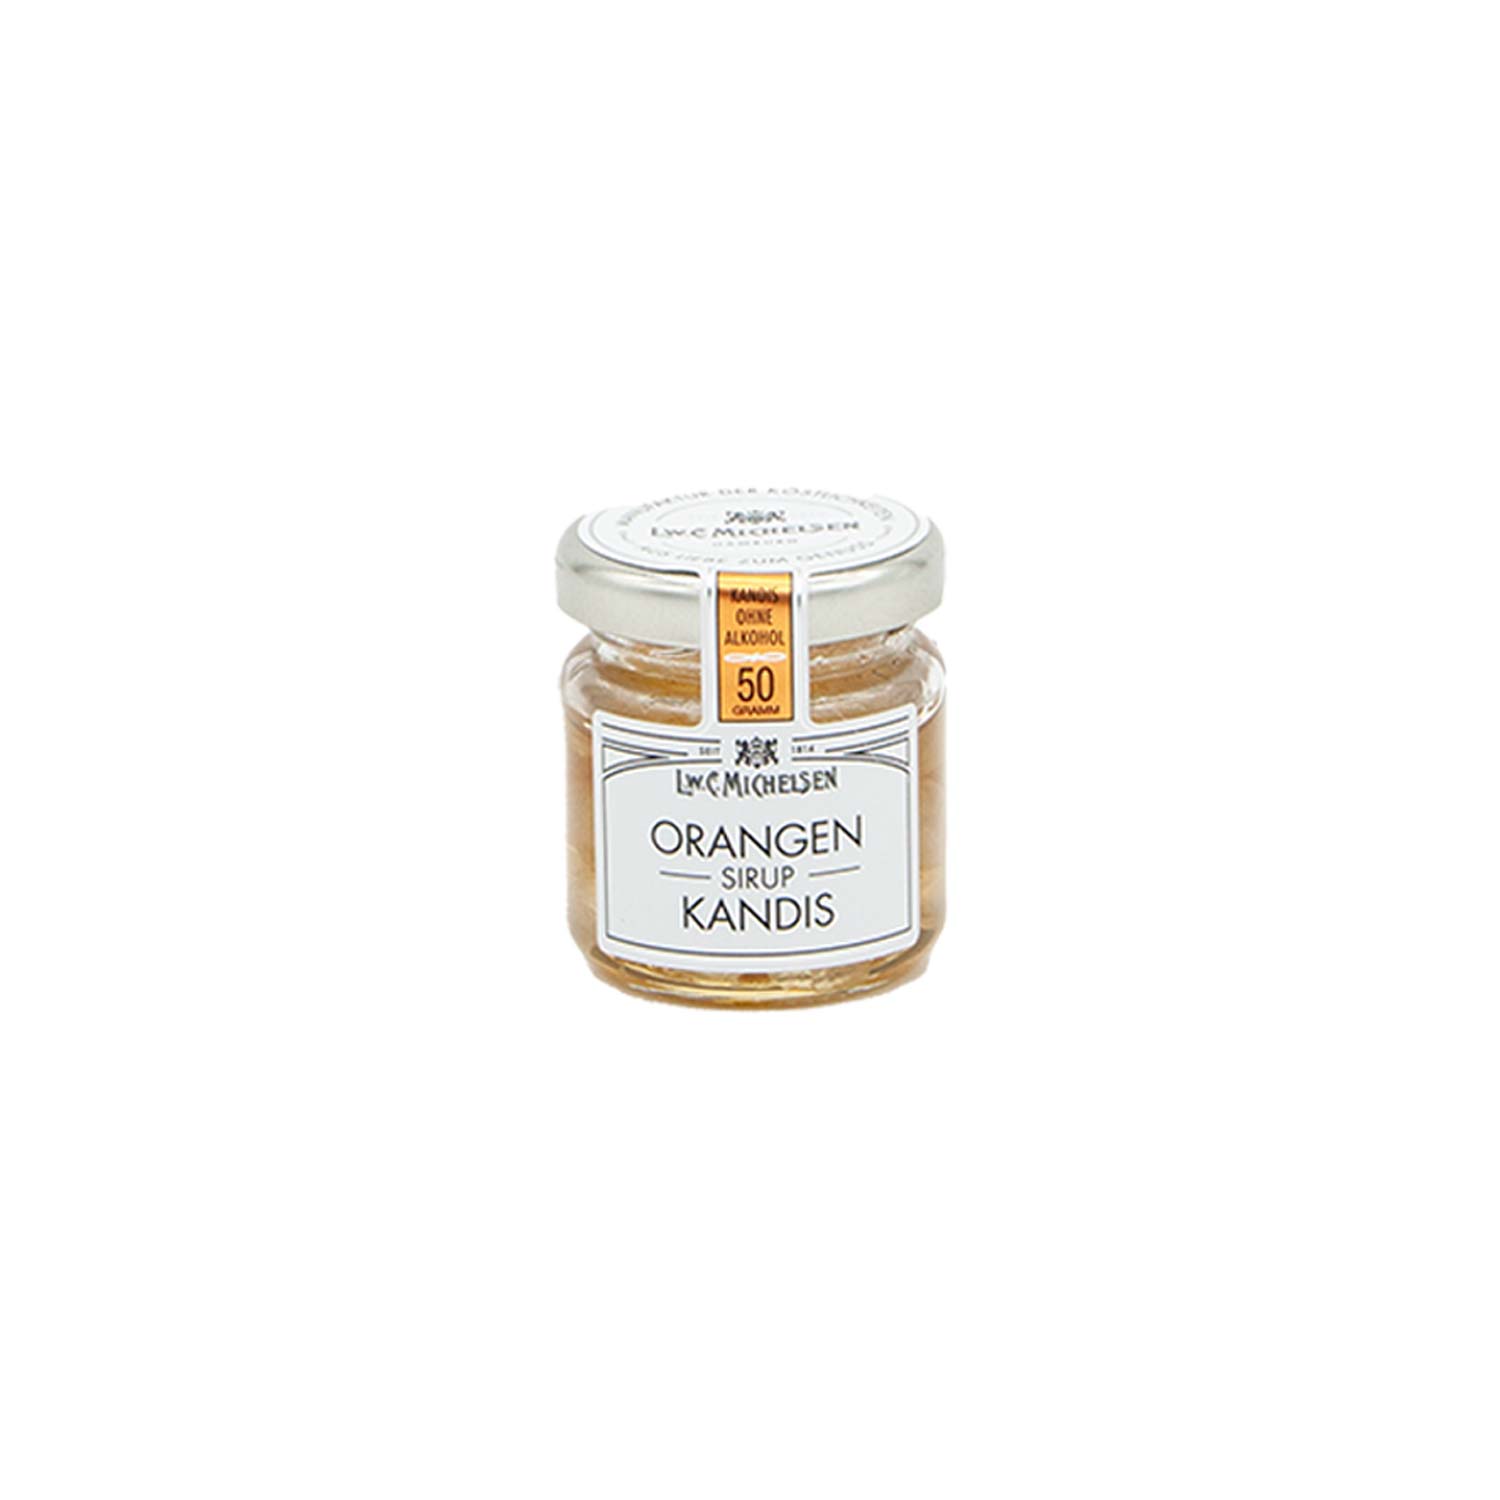 Weißer Kandis in Orangen-Sirup, 50 g